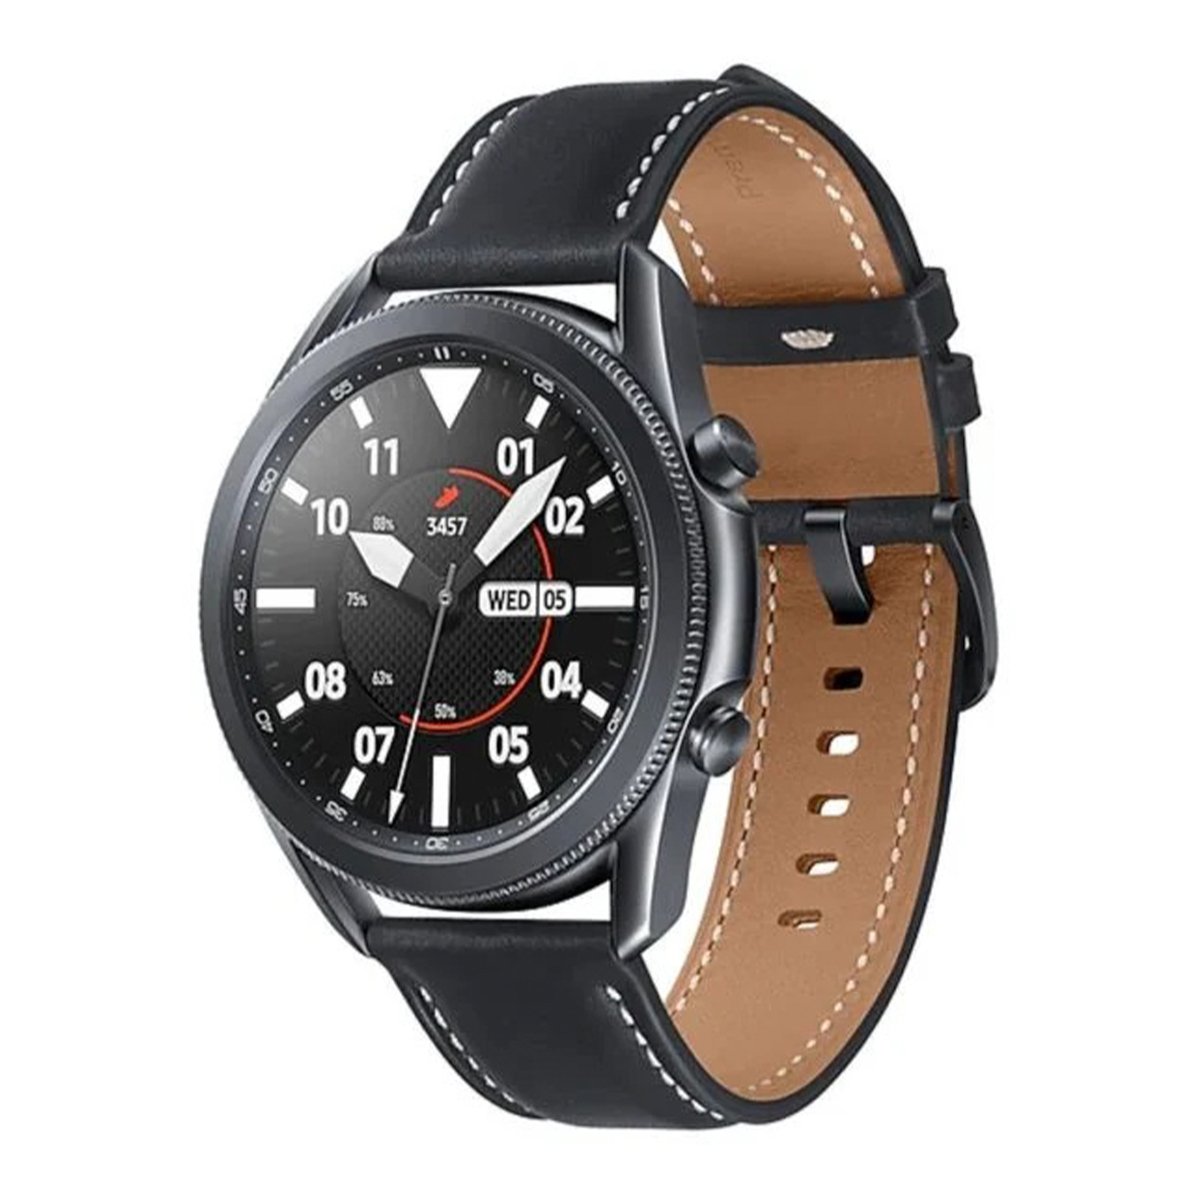 Samsung Galaxy Watch 3 -R840 45mm Mystic Black +JBL Earbud JBLT120TWS Black(Watch Part No:SM-R840NZKAMEA+JBL Part No:F-JBLT120TWSBL)